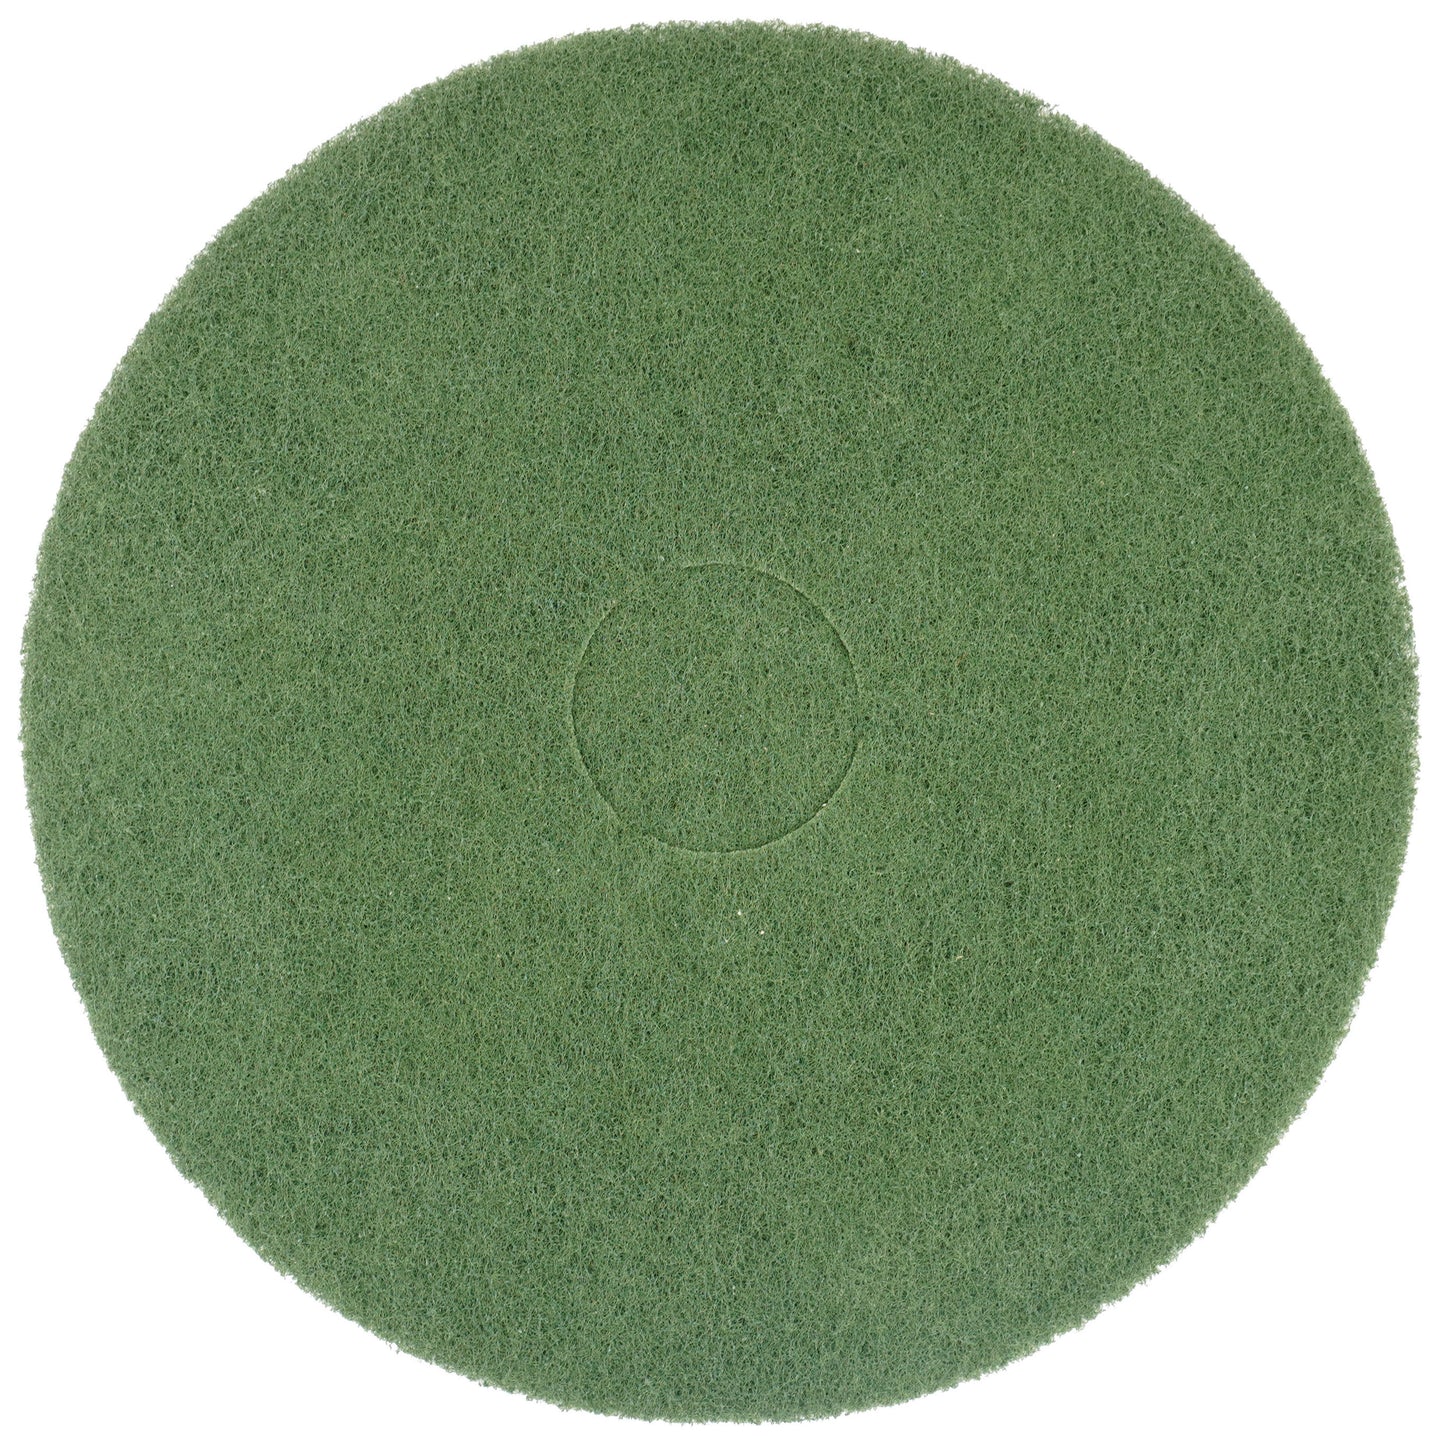 405/22mm Superpad grün für Unterhaltsreinigung und Netze